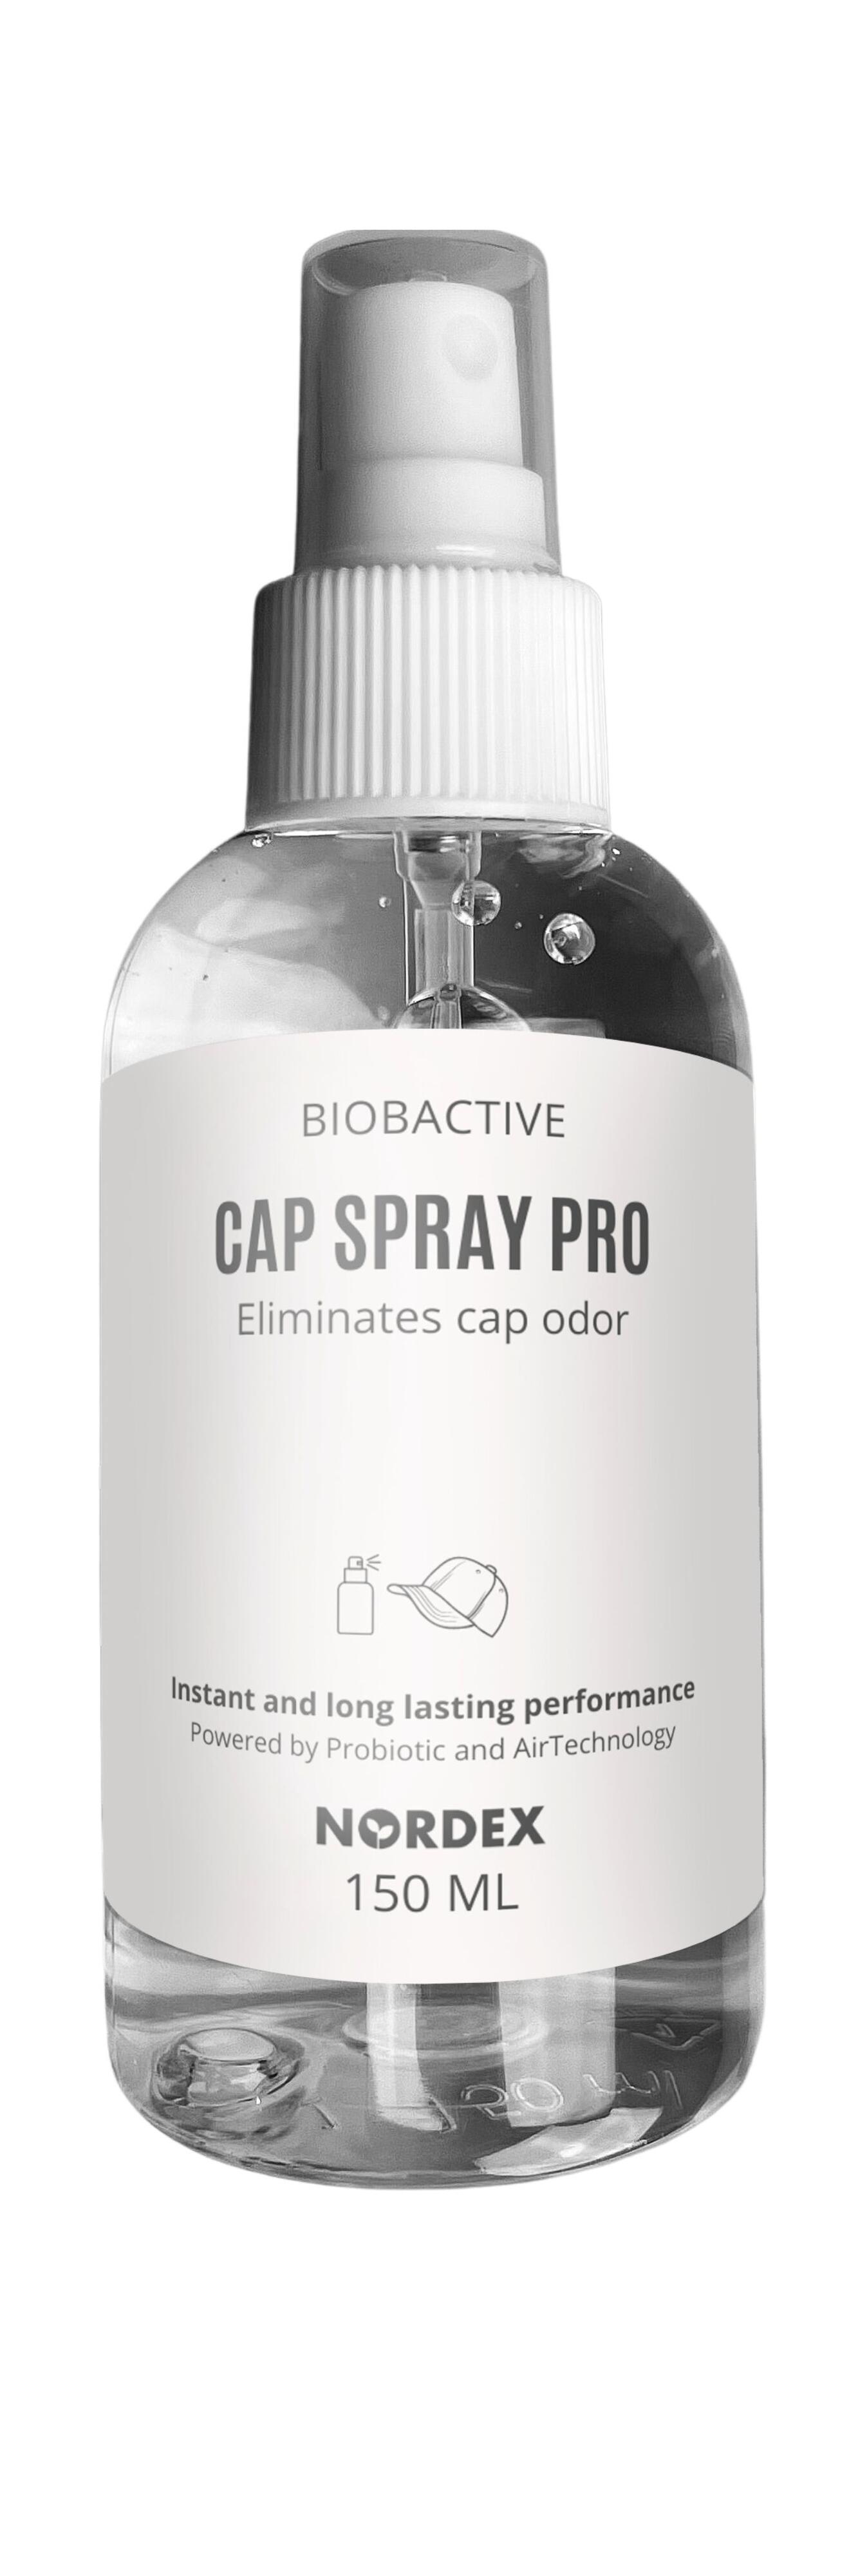 Cap Spray Nordex Biobactive Pro 150ml